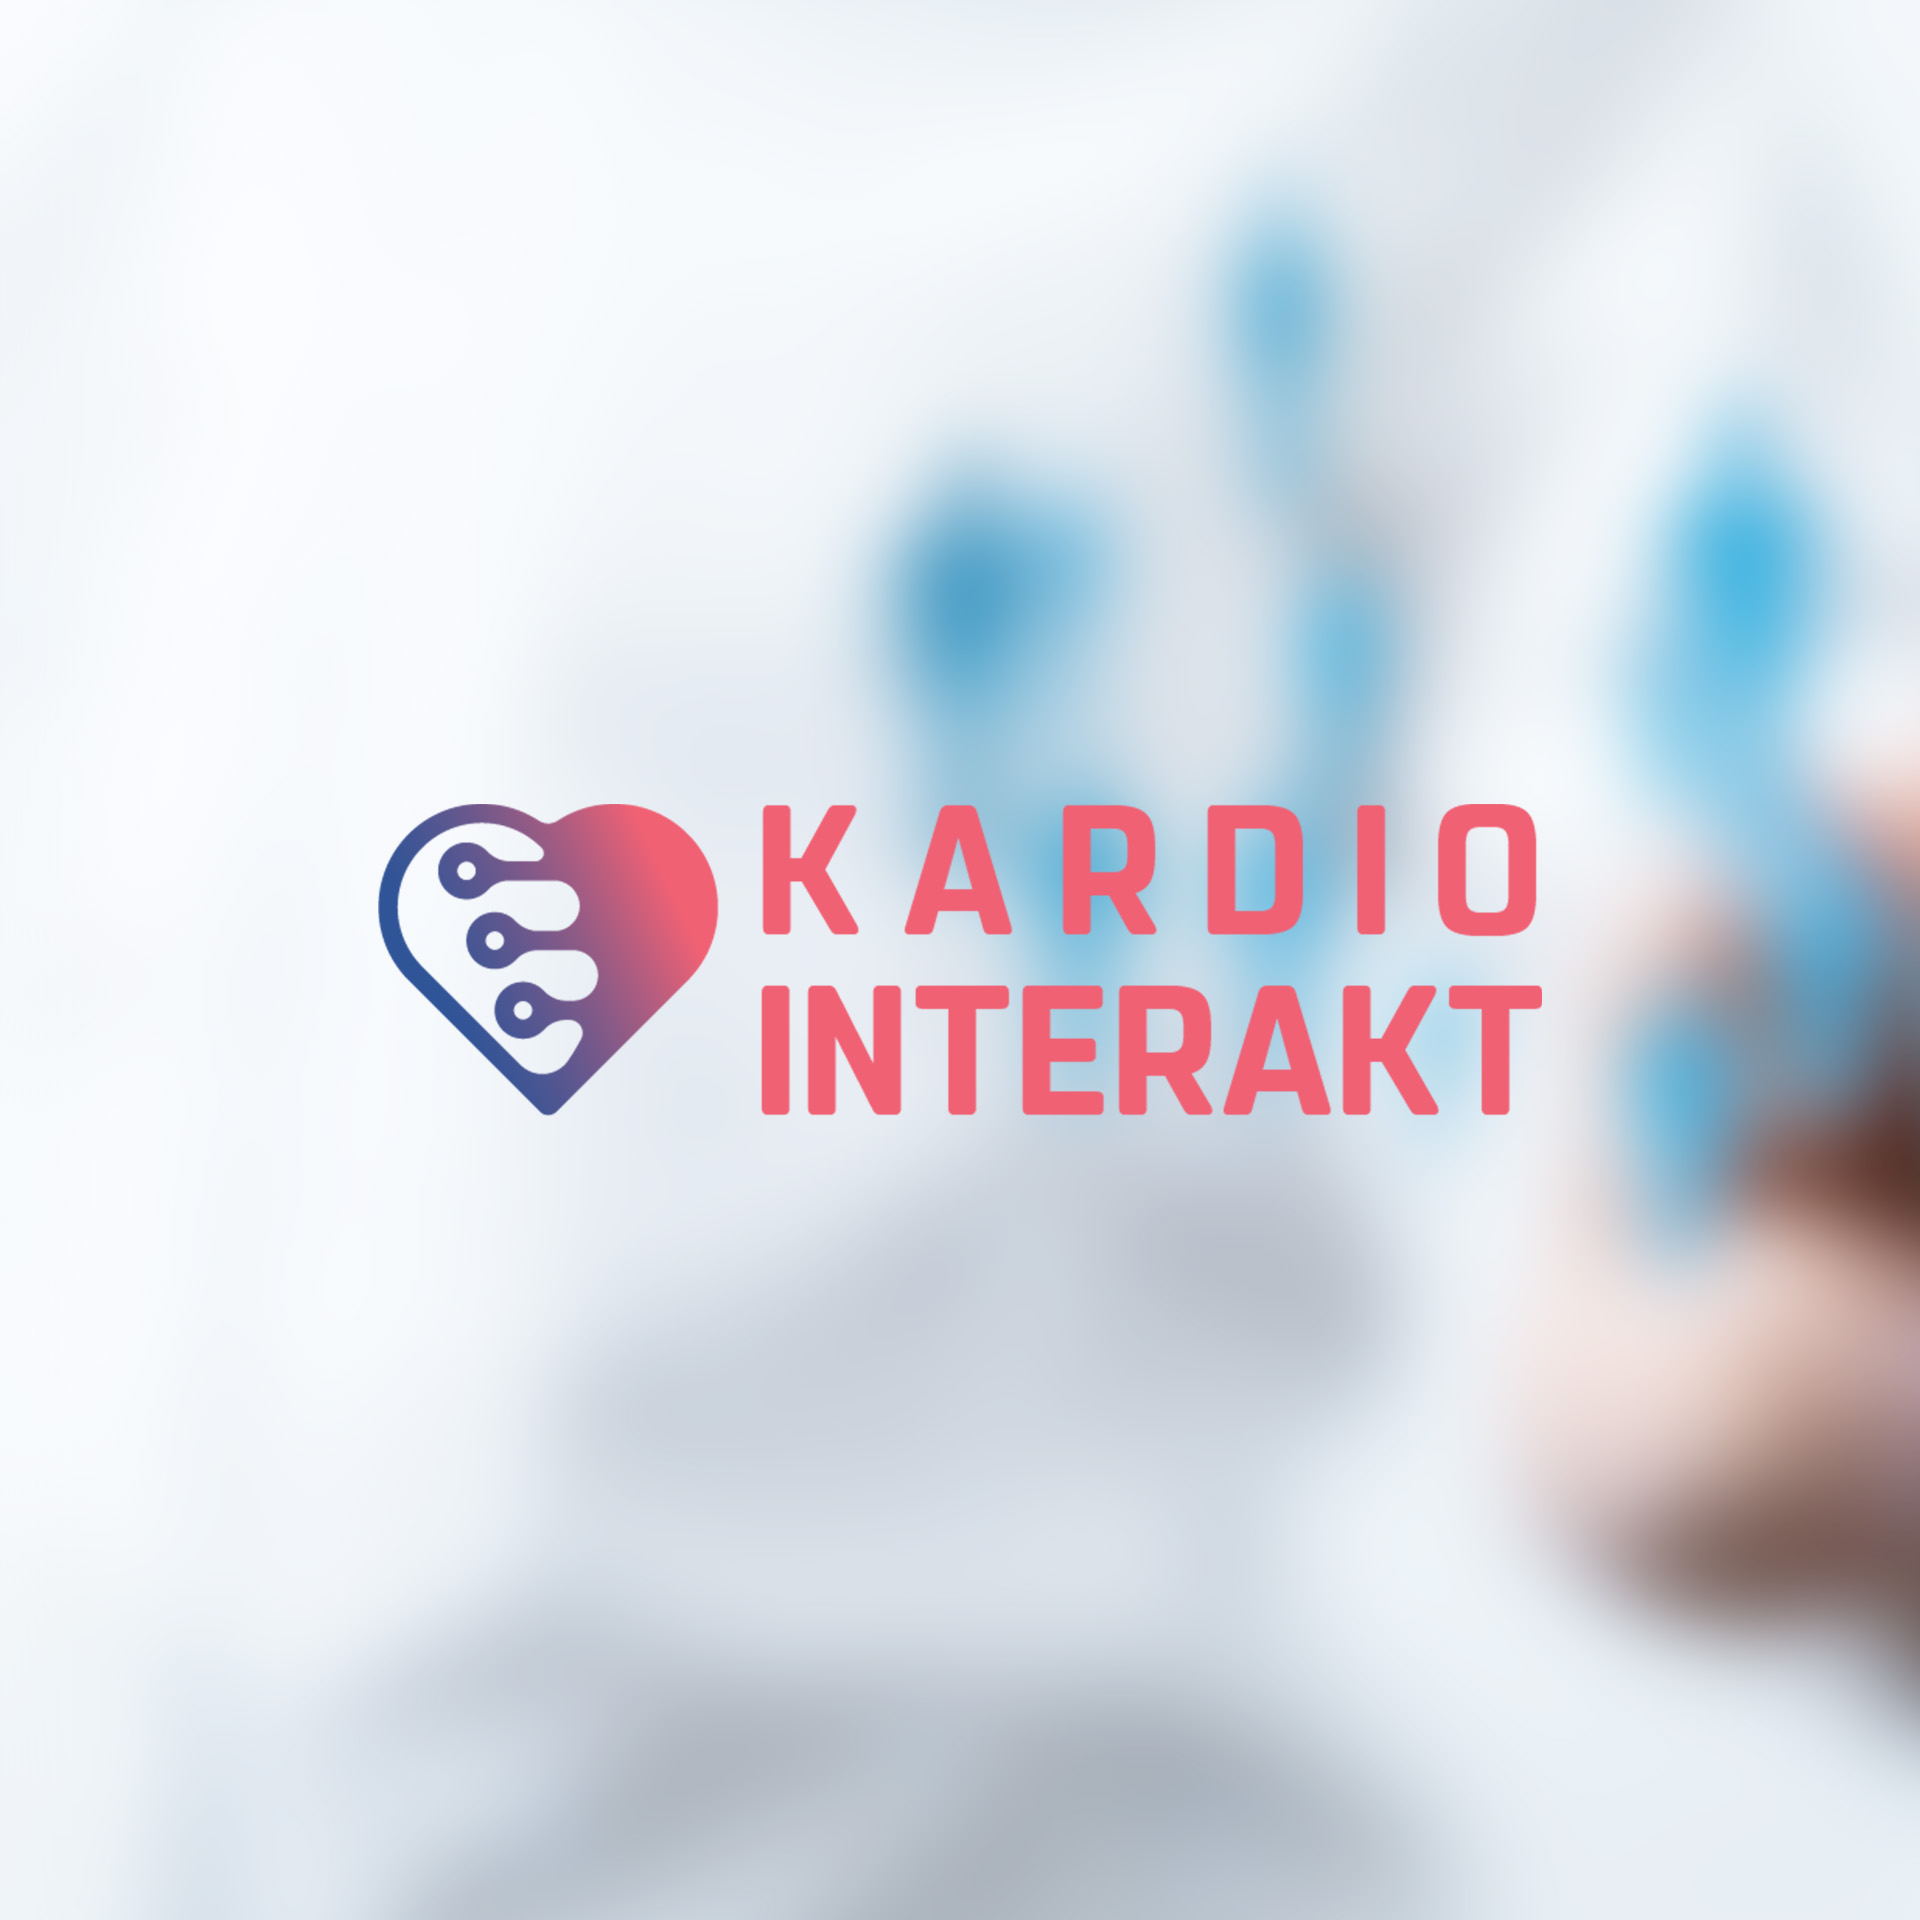 Das Logo des Forschungsprojekts Kardiointerakt, an dem die pheal GmbH beteiligt ist.